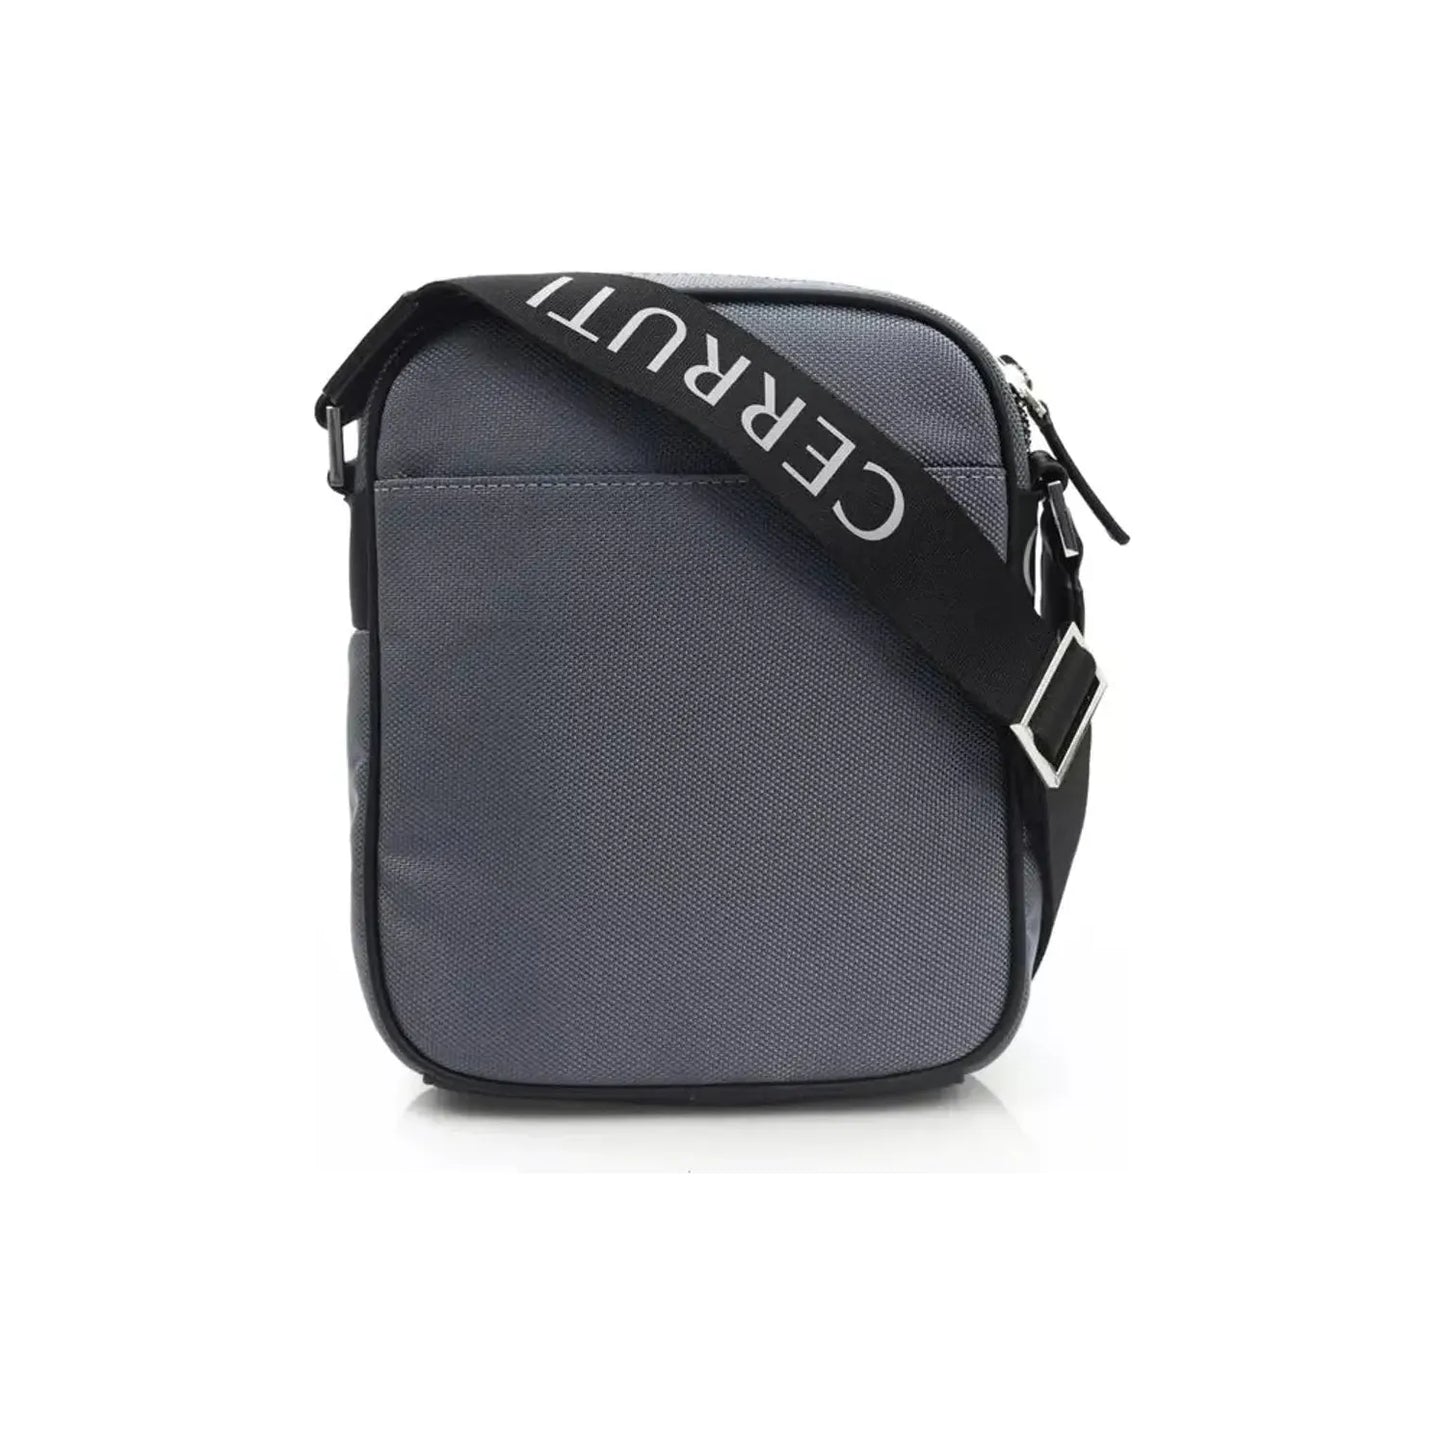 Cerruti 1881 Chic Gray Nylon-Leather Messenger Handbag gray-nylon-messenger-bag